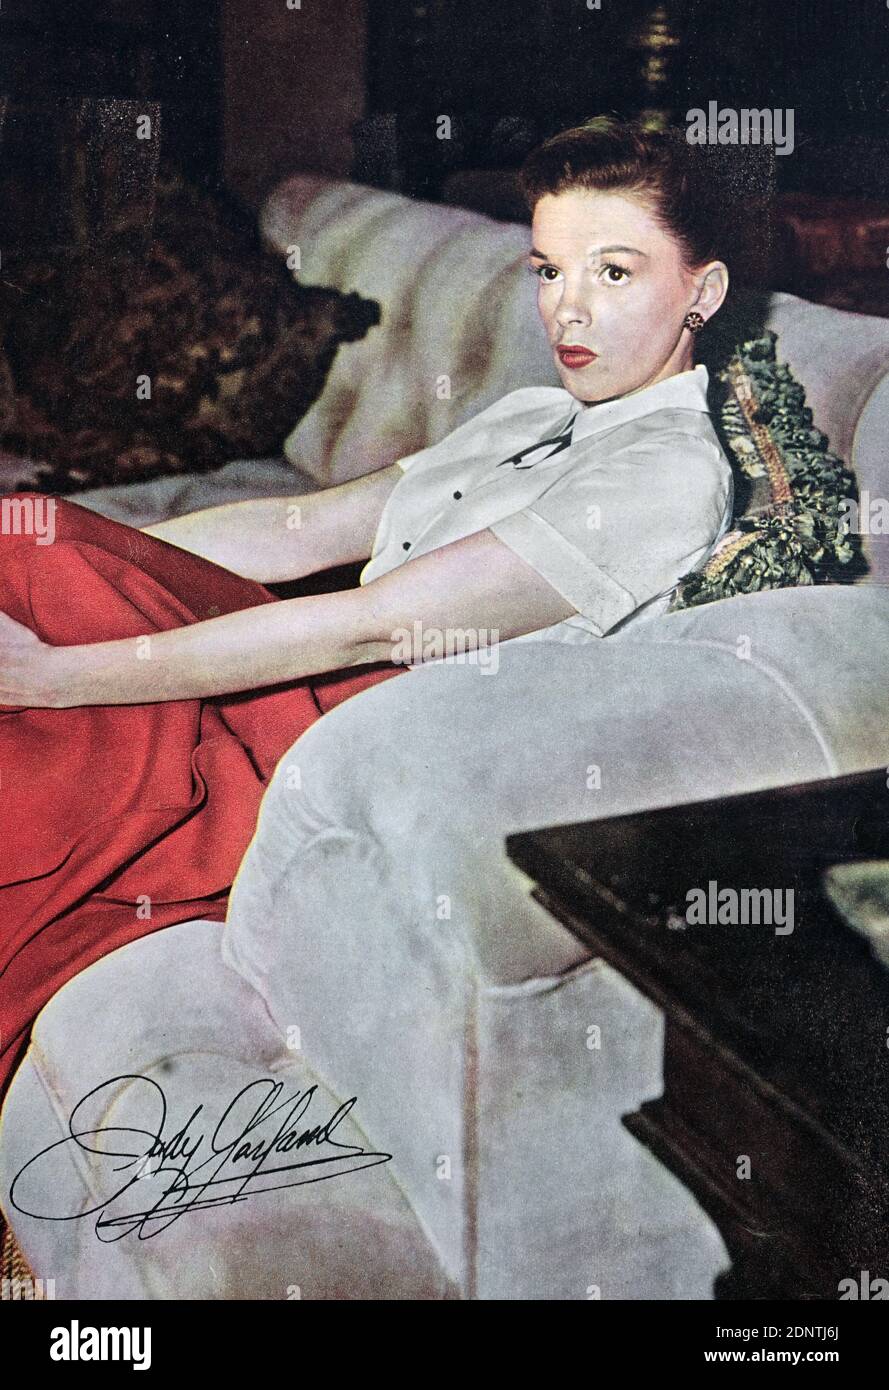 Photographie autographiée de Judy Garland (1922-1969) actrice, chanteuse, vaudevillienne et danseuse américaine. Banque D'Images